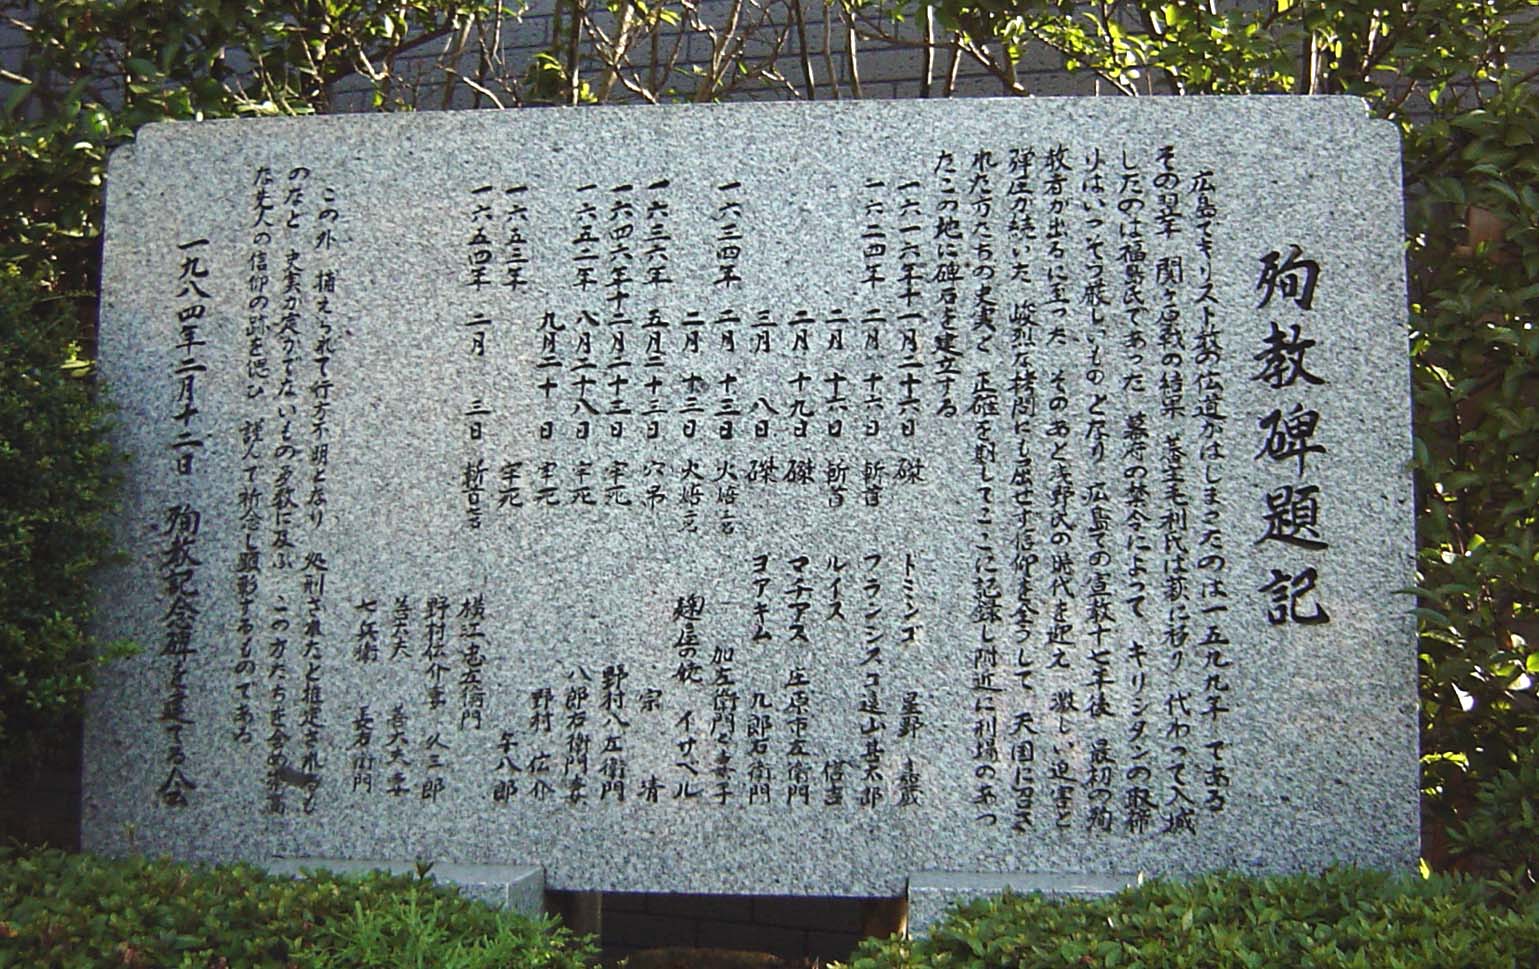 広島キリシタン殉教の碑に刻まれた名前